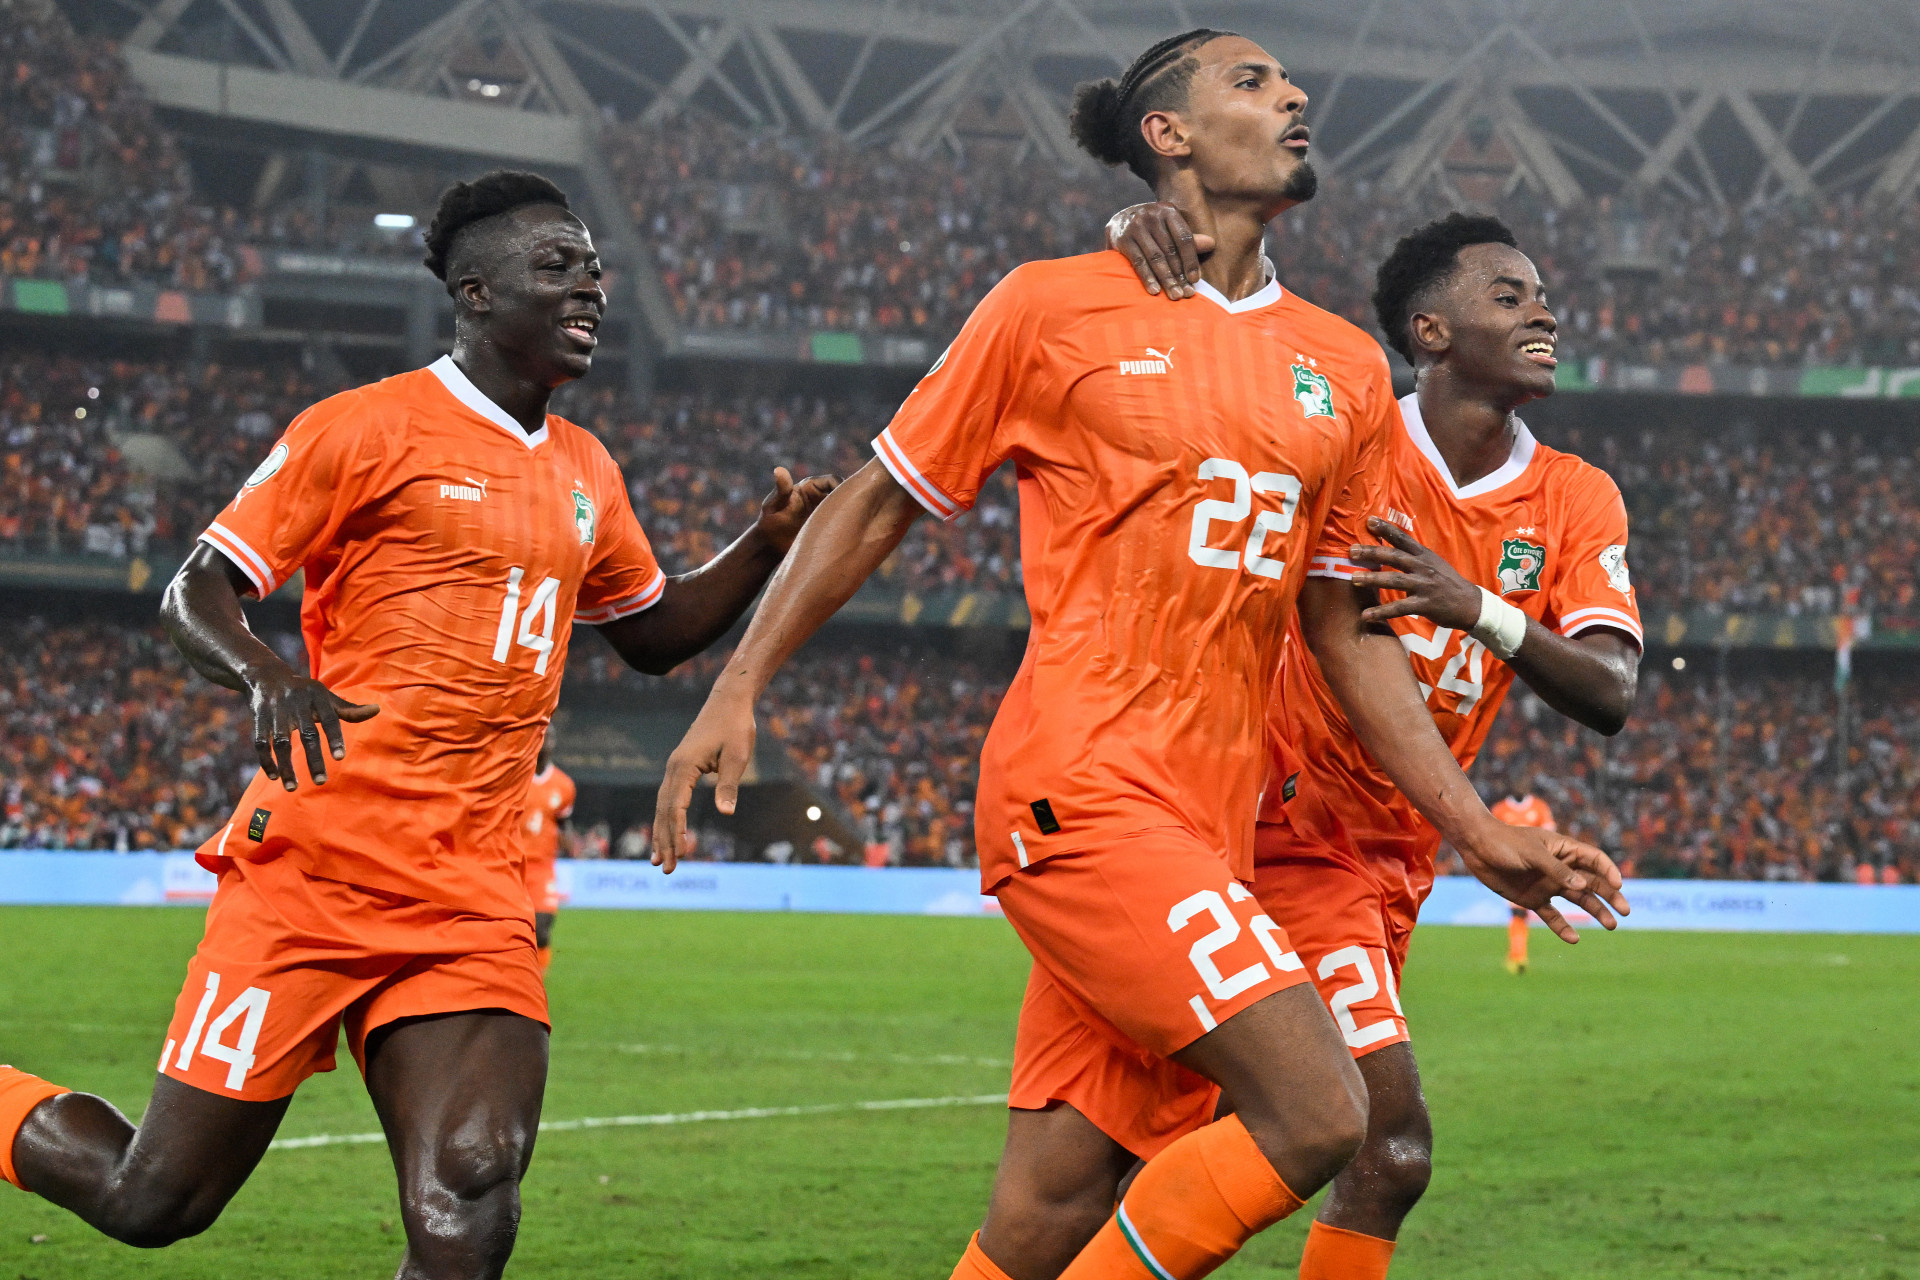 Sebastien Haller comemora o gol marcado na vitória da Costa do Marfim sobre a Nigéria - Issouf SANOGO / AFP